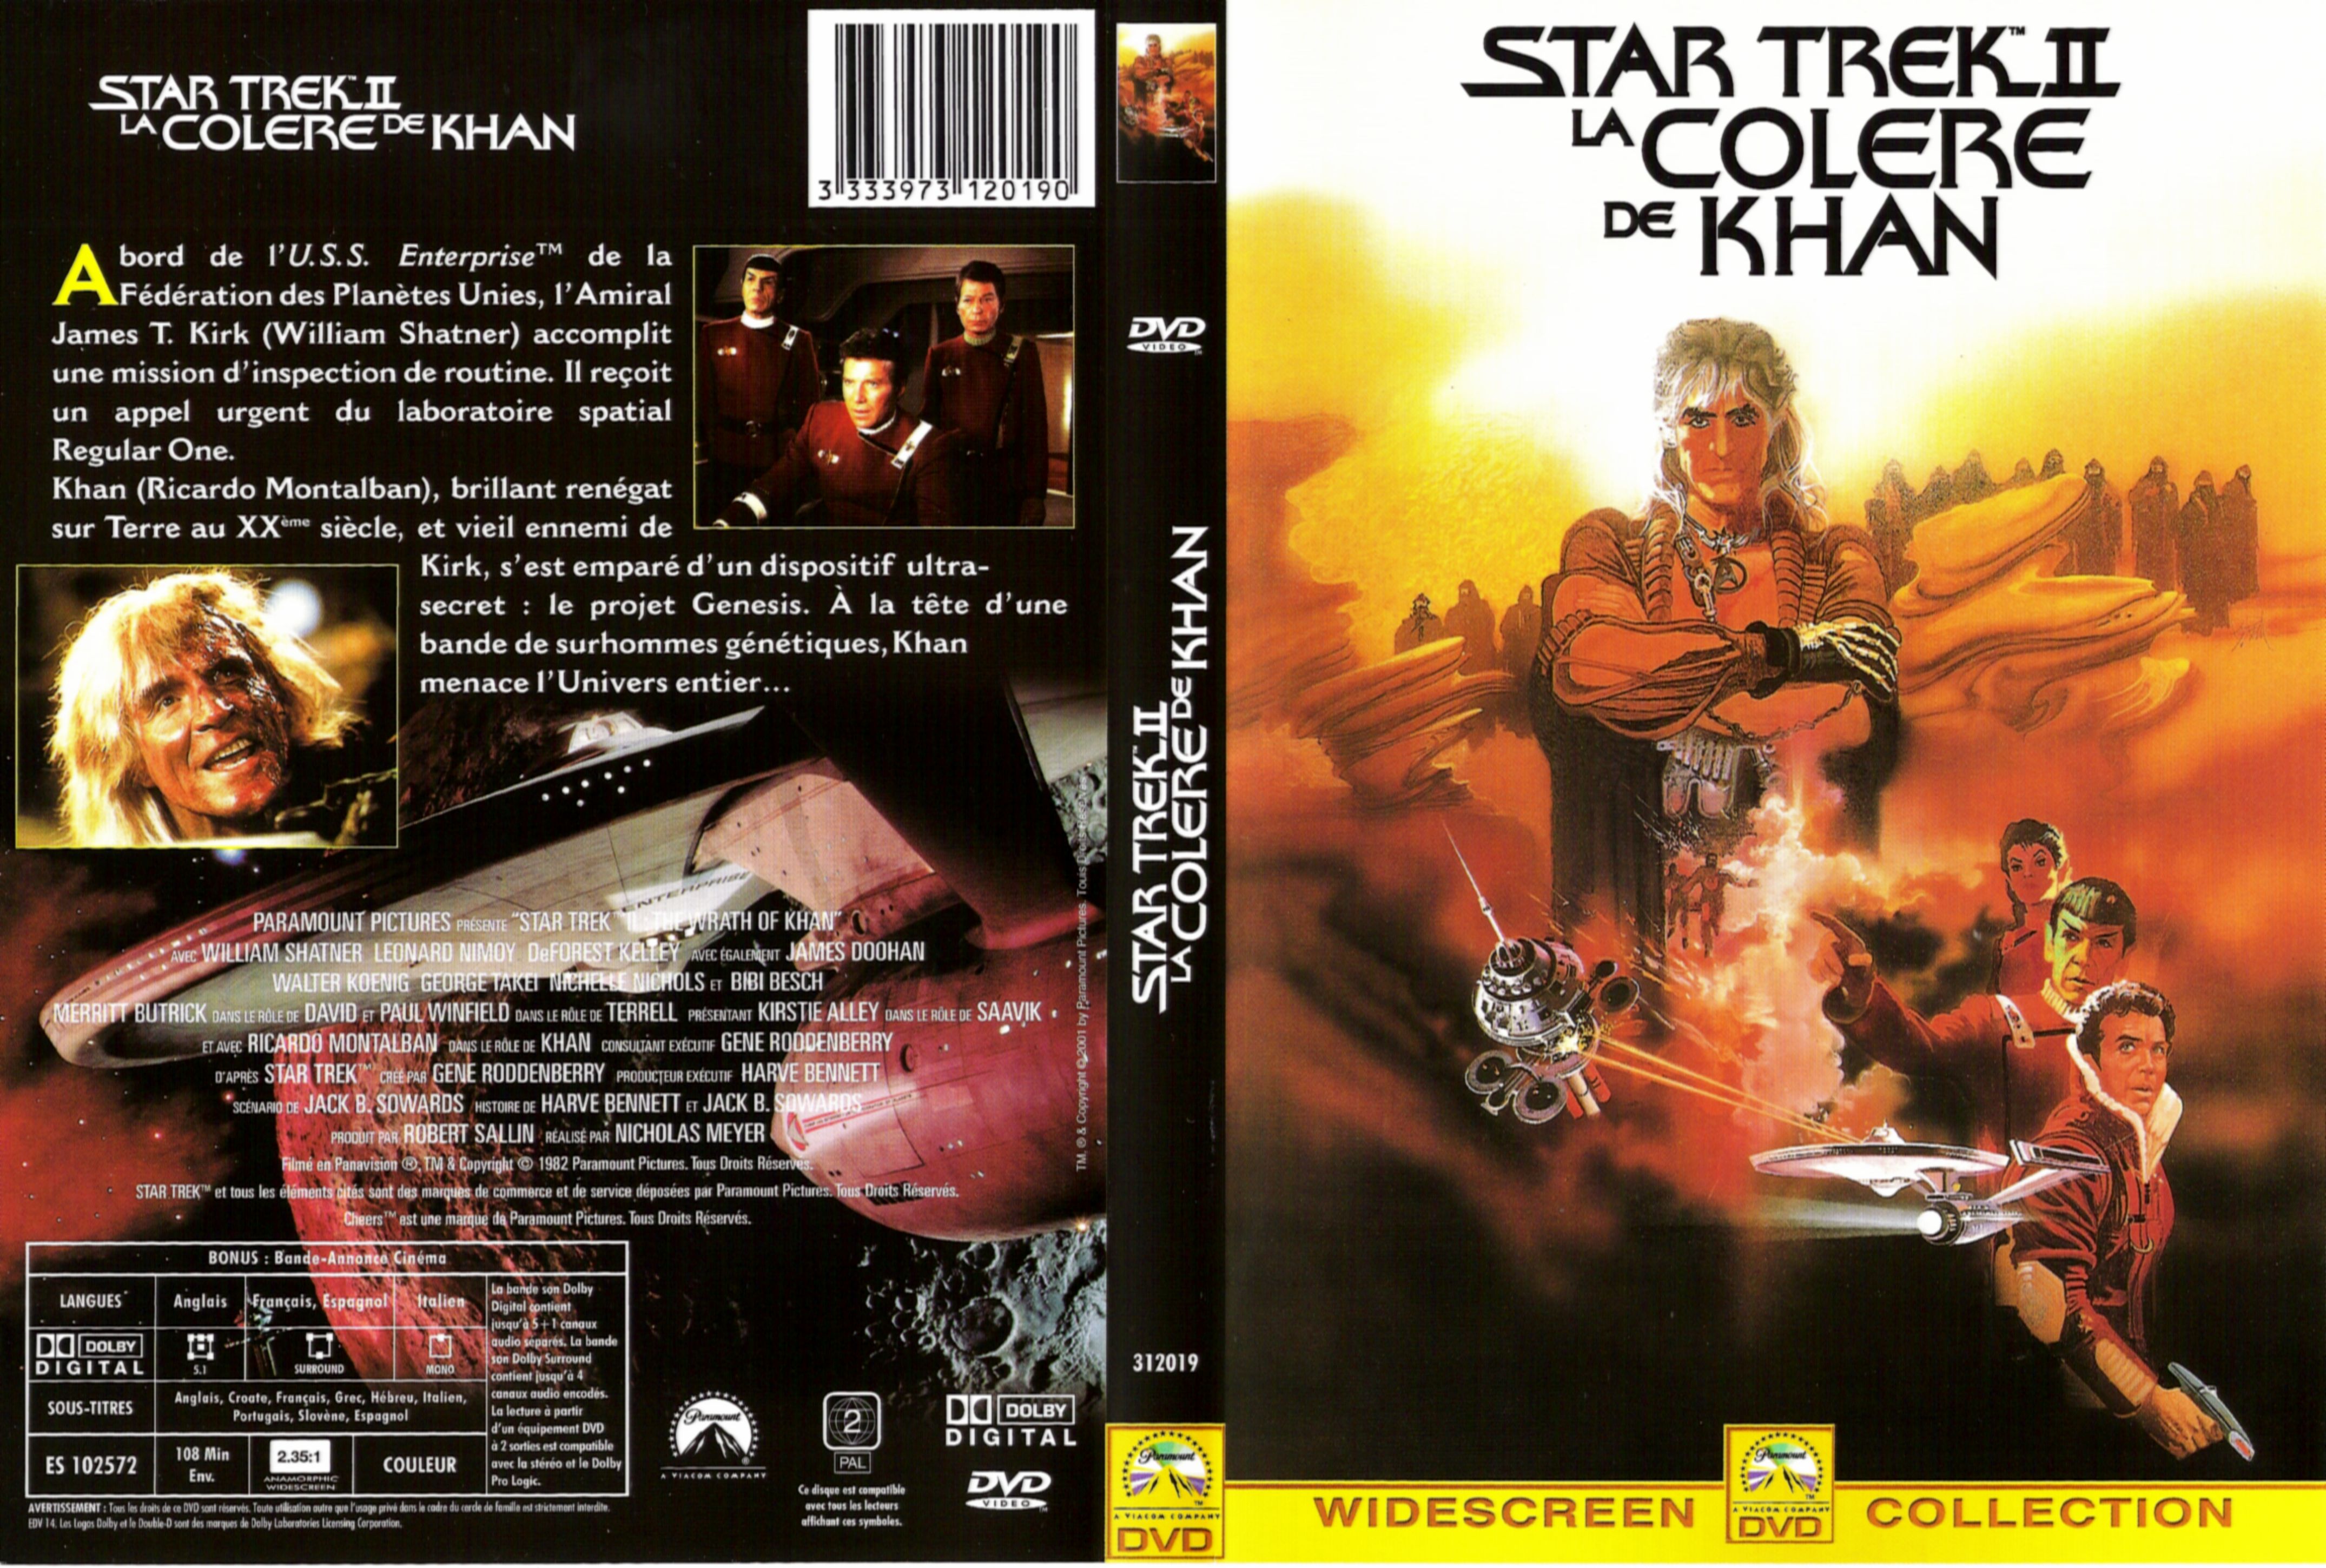 Jaquette DVD Star Trek 2 la colre de Khan